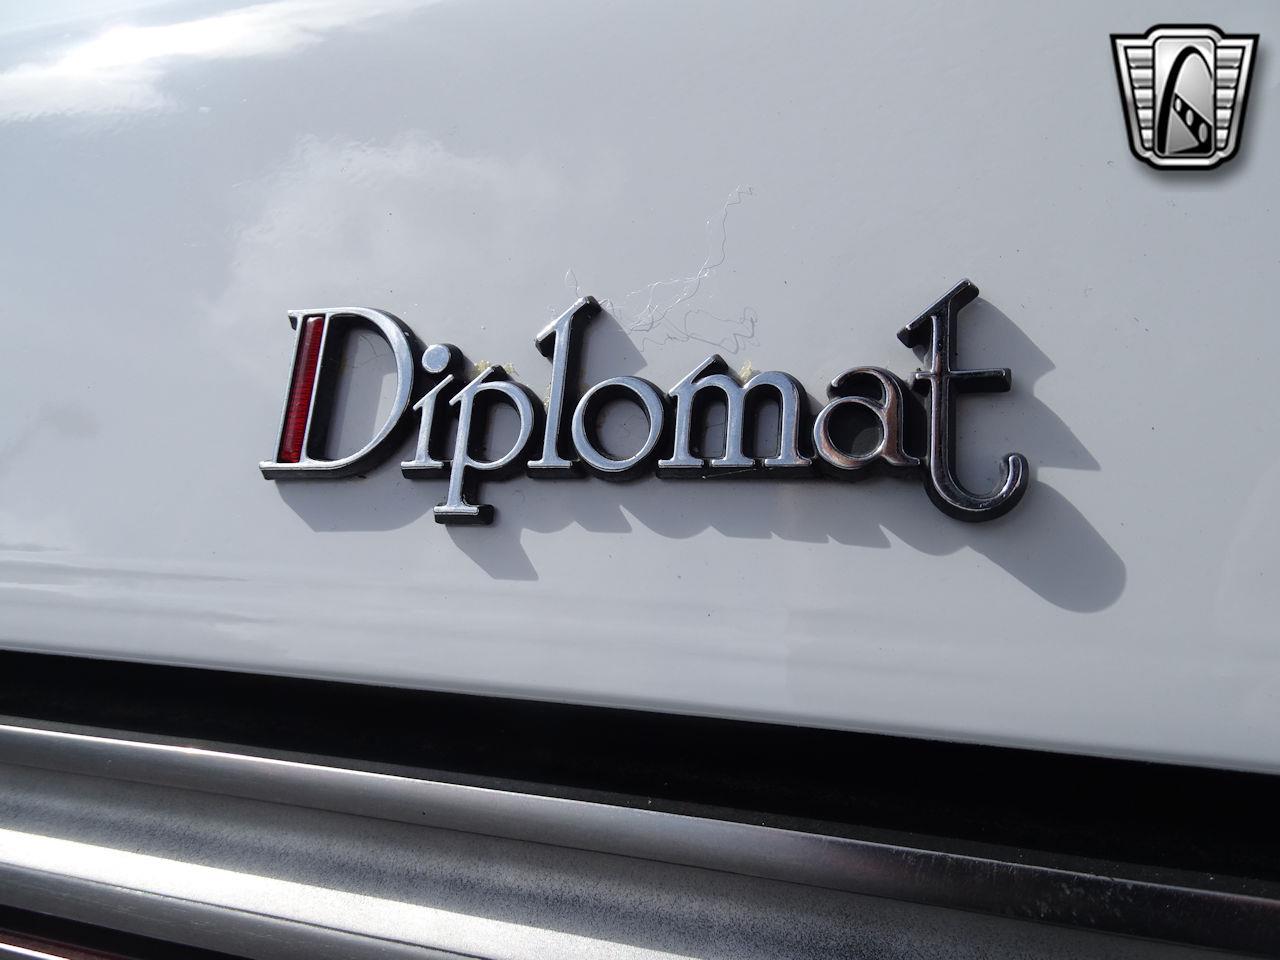 1984 Dodge Diplomat for sale in O'Fallon, IL – photo 77